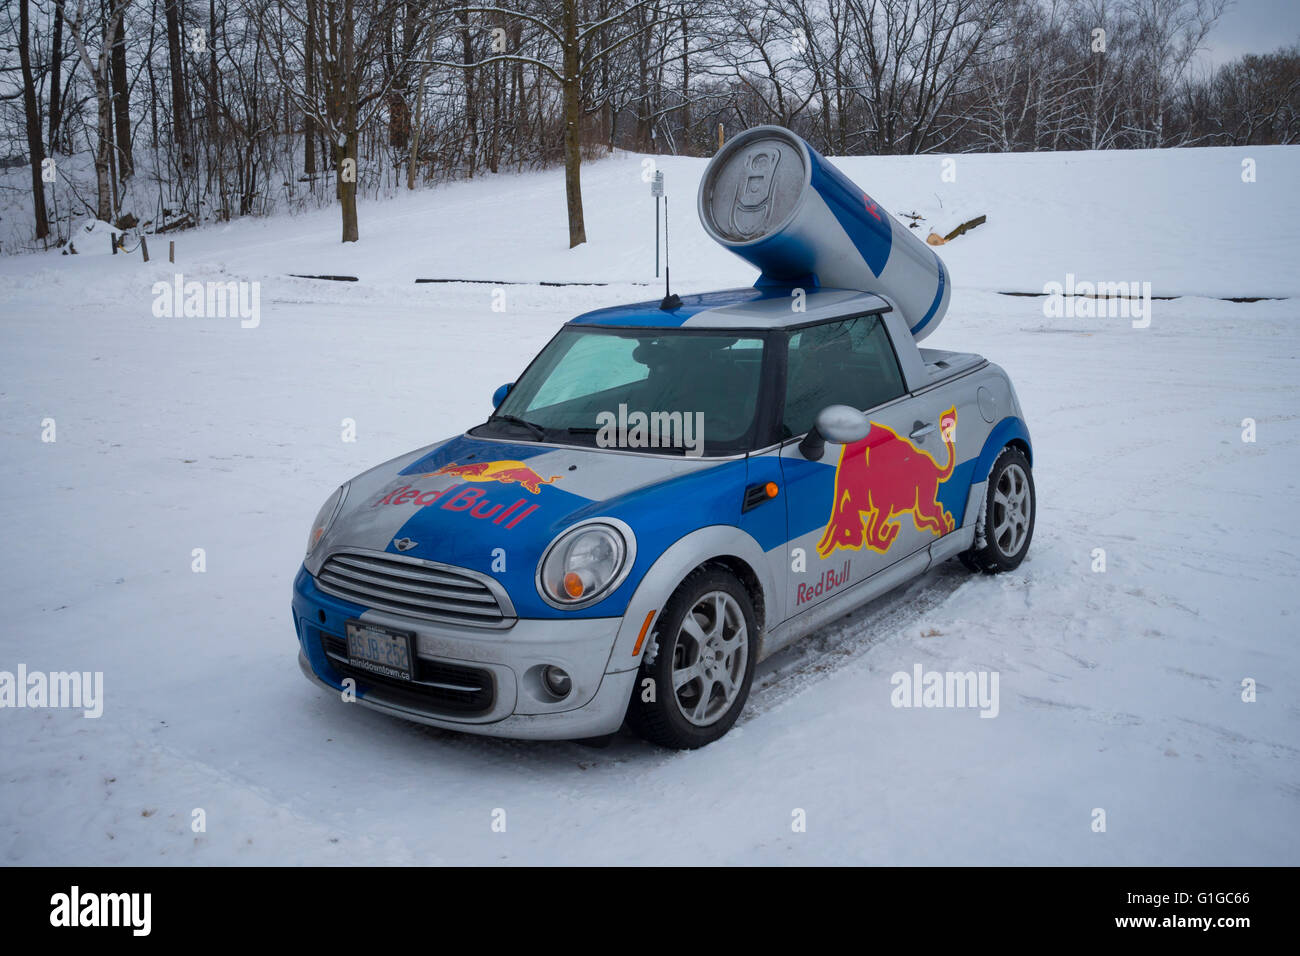 Une Red Bull Mini voiture garée dans un parking couvert de neige dans la région de Hamilton, Ontario, Canada. Banque D'Images